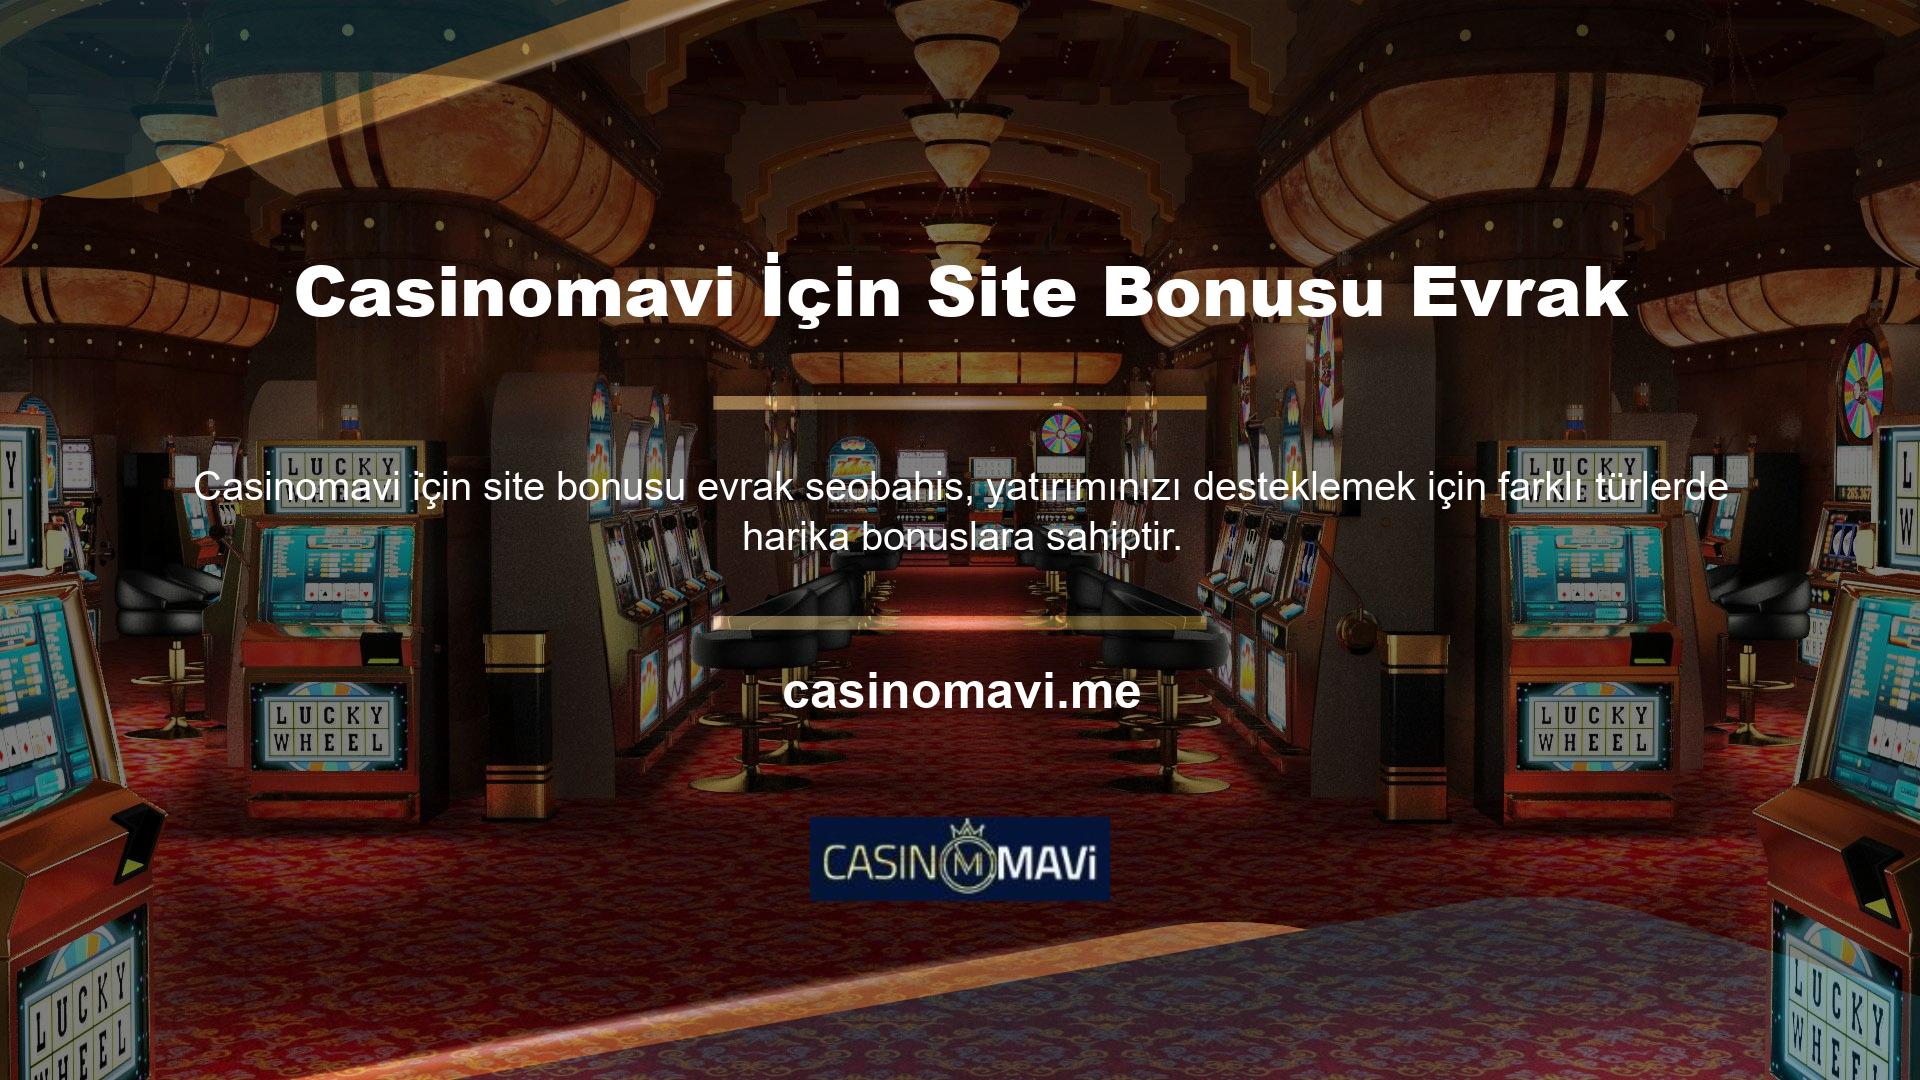 Oyuncular genellikle yatırımlarını daha iyi Casinomavi için site bonusu evrak iletmek için burada kullanabilecekleri bonuslar alırlar